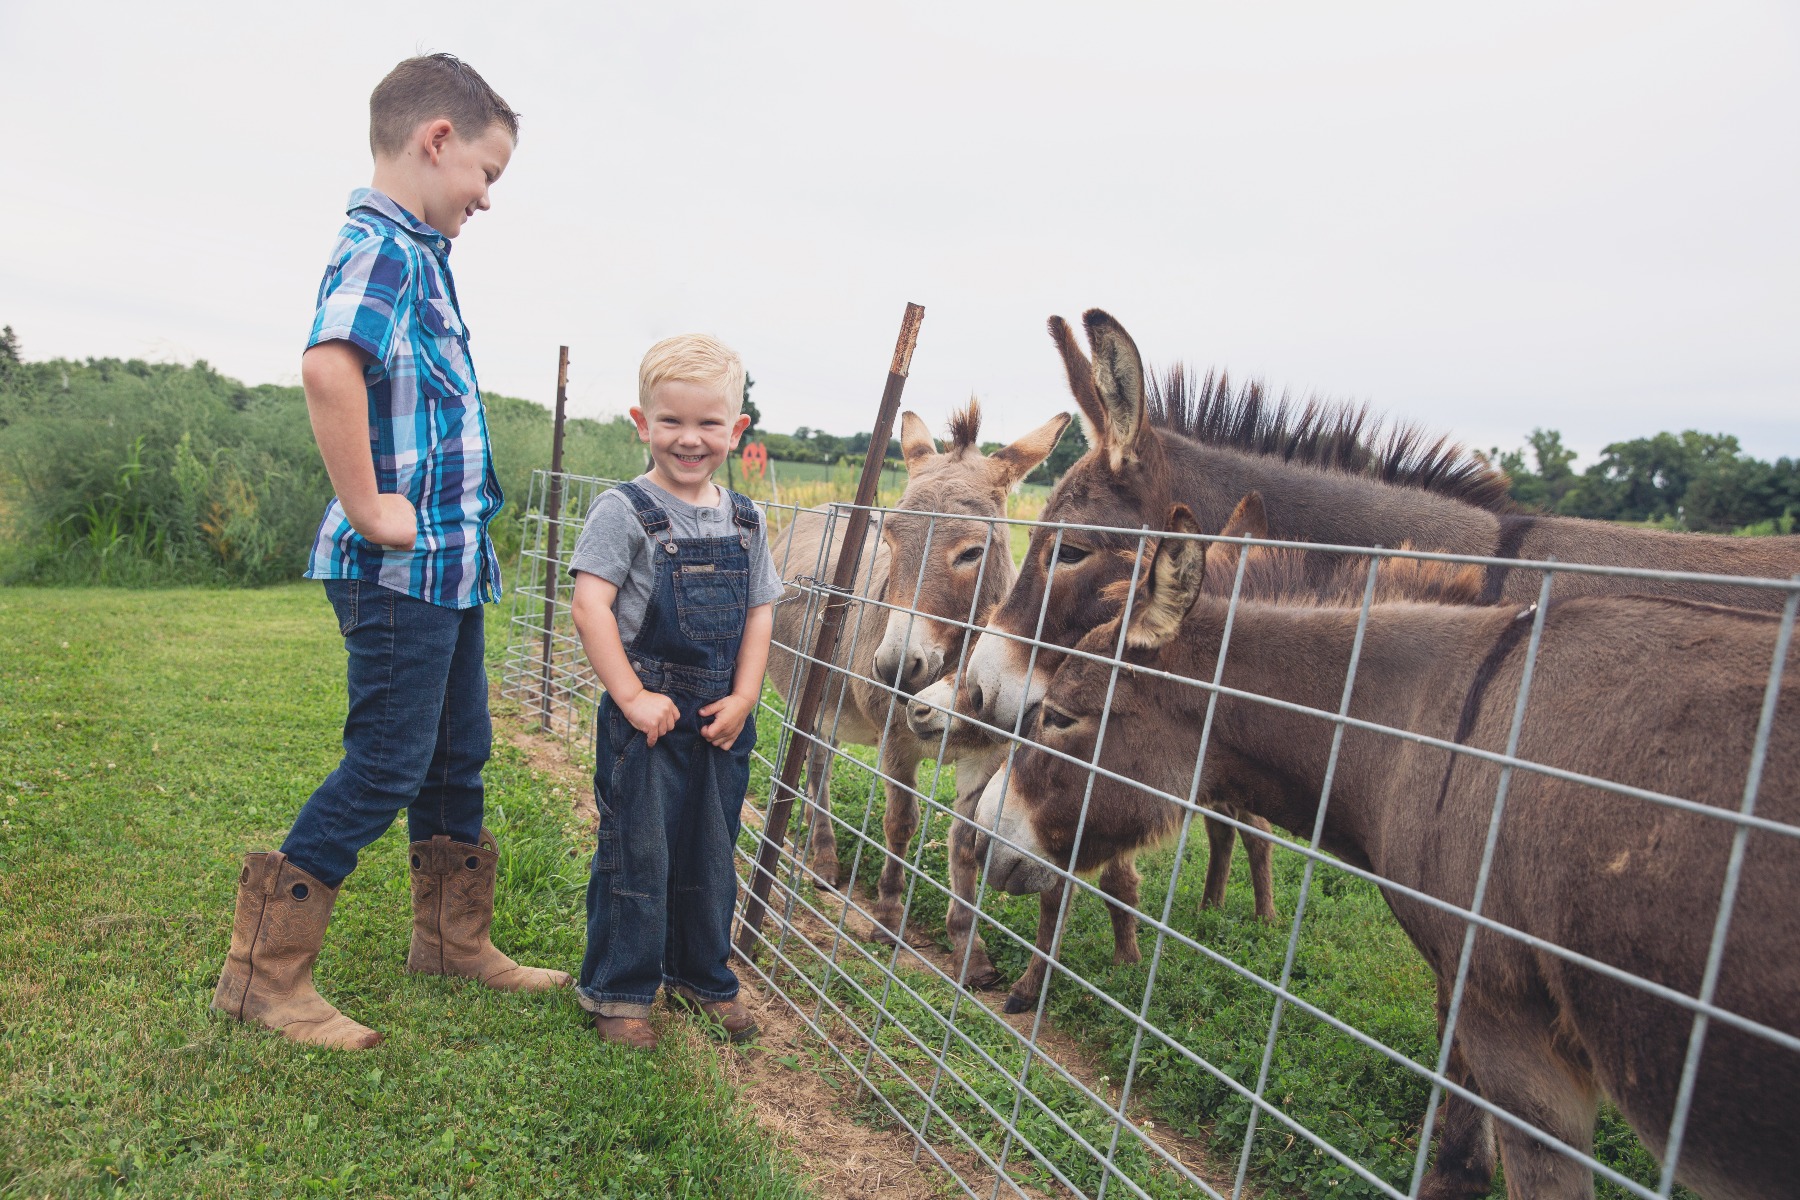 two boys in denim smiles along side donkeys on a farm